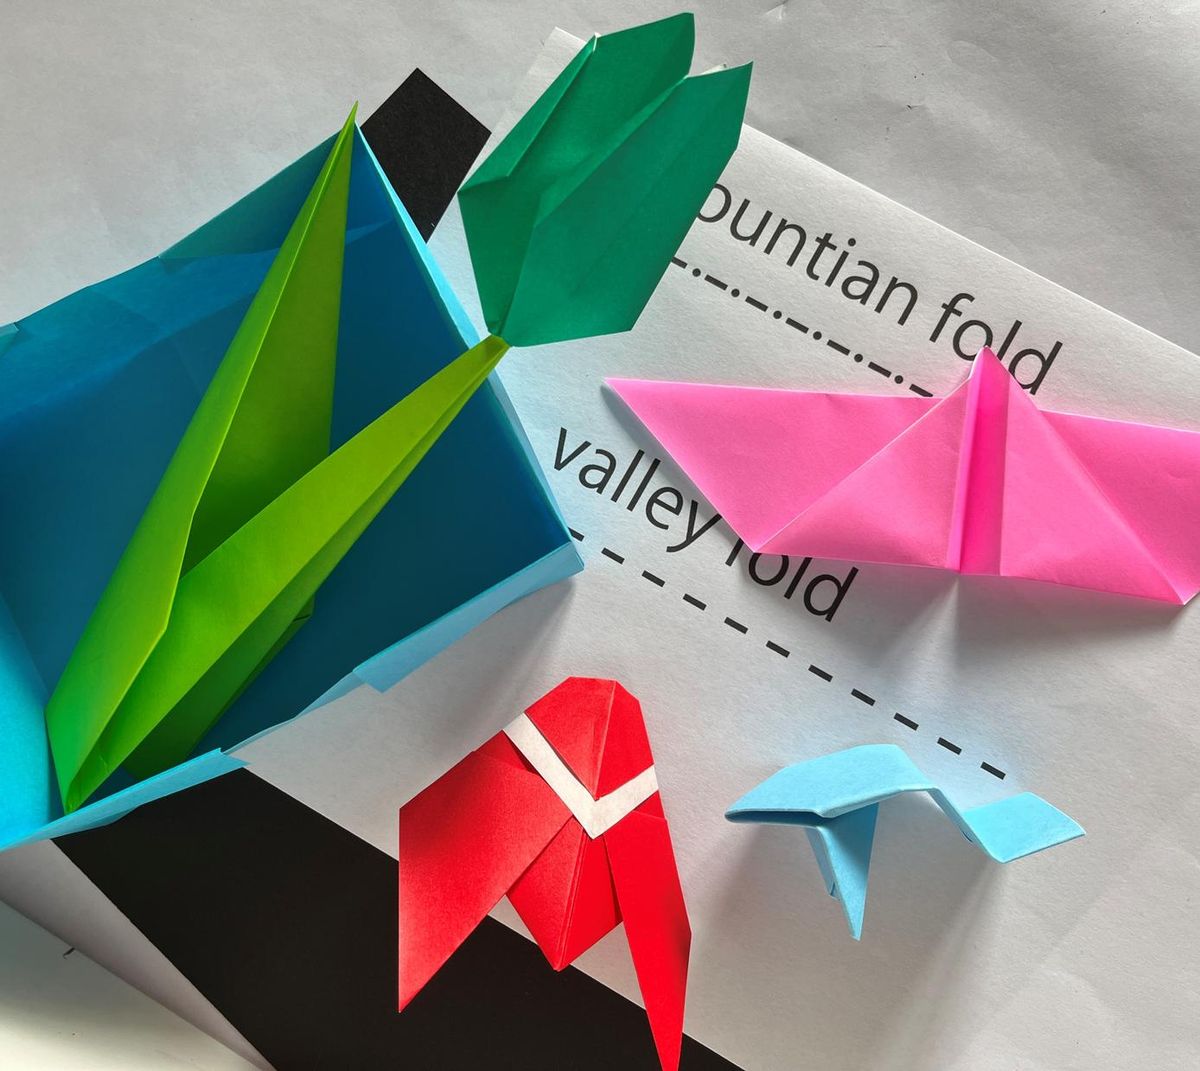 Workshop: Paper Folding Workshop with Joan Son (Beginning Basics)